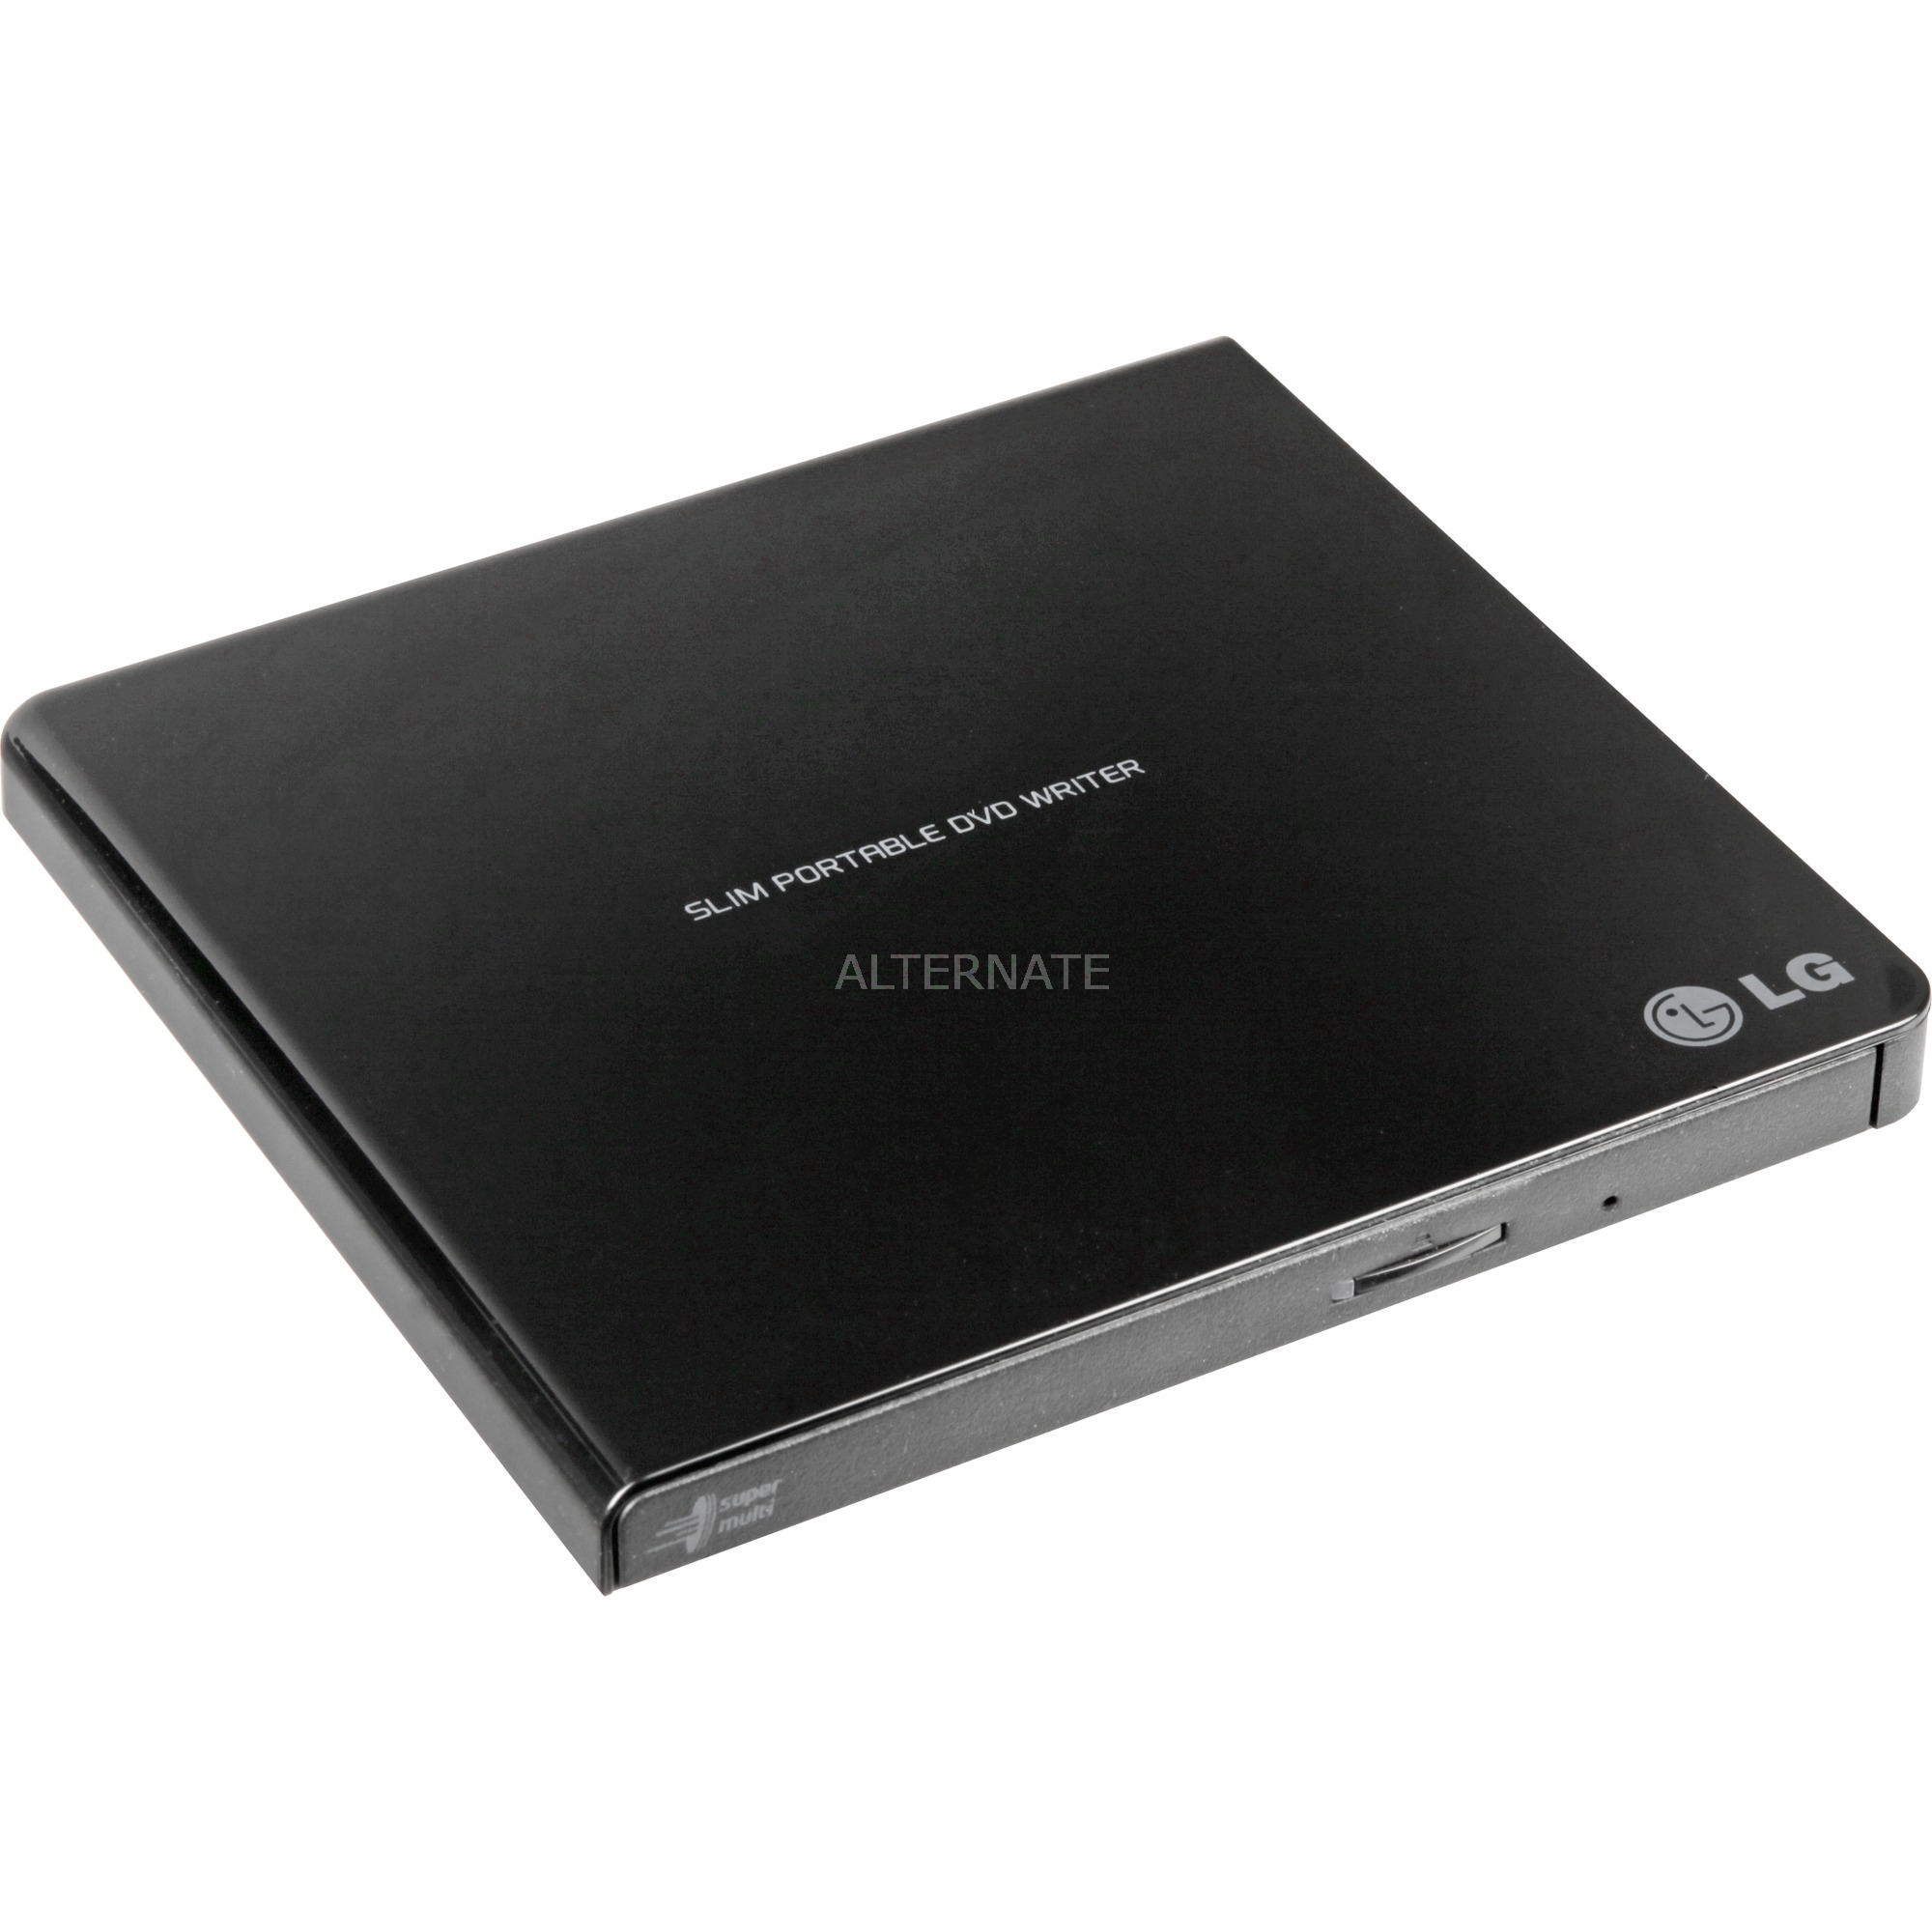 GP57EB40 DVD Super Multi DL Czarny dysk optyczny, zewnętrzna nagrywarka DVD